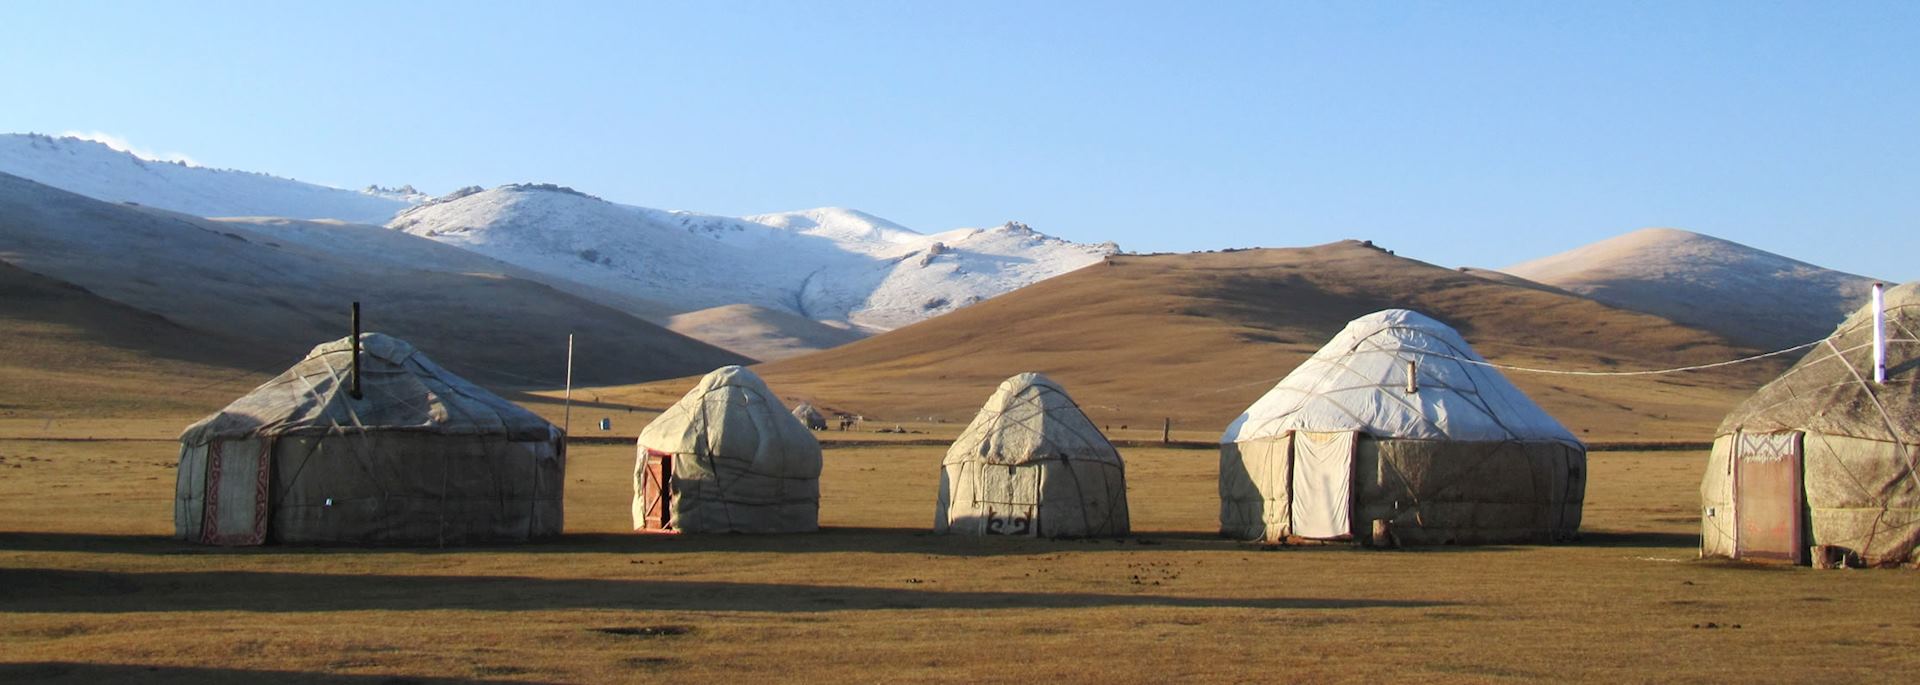 Traditional yurt on Song-Kul Lake